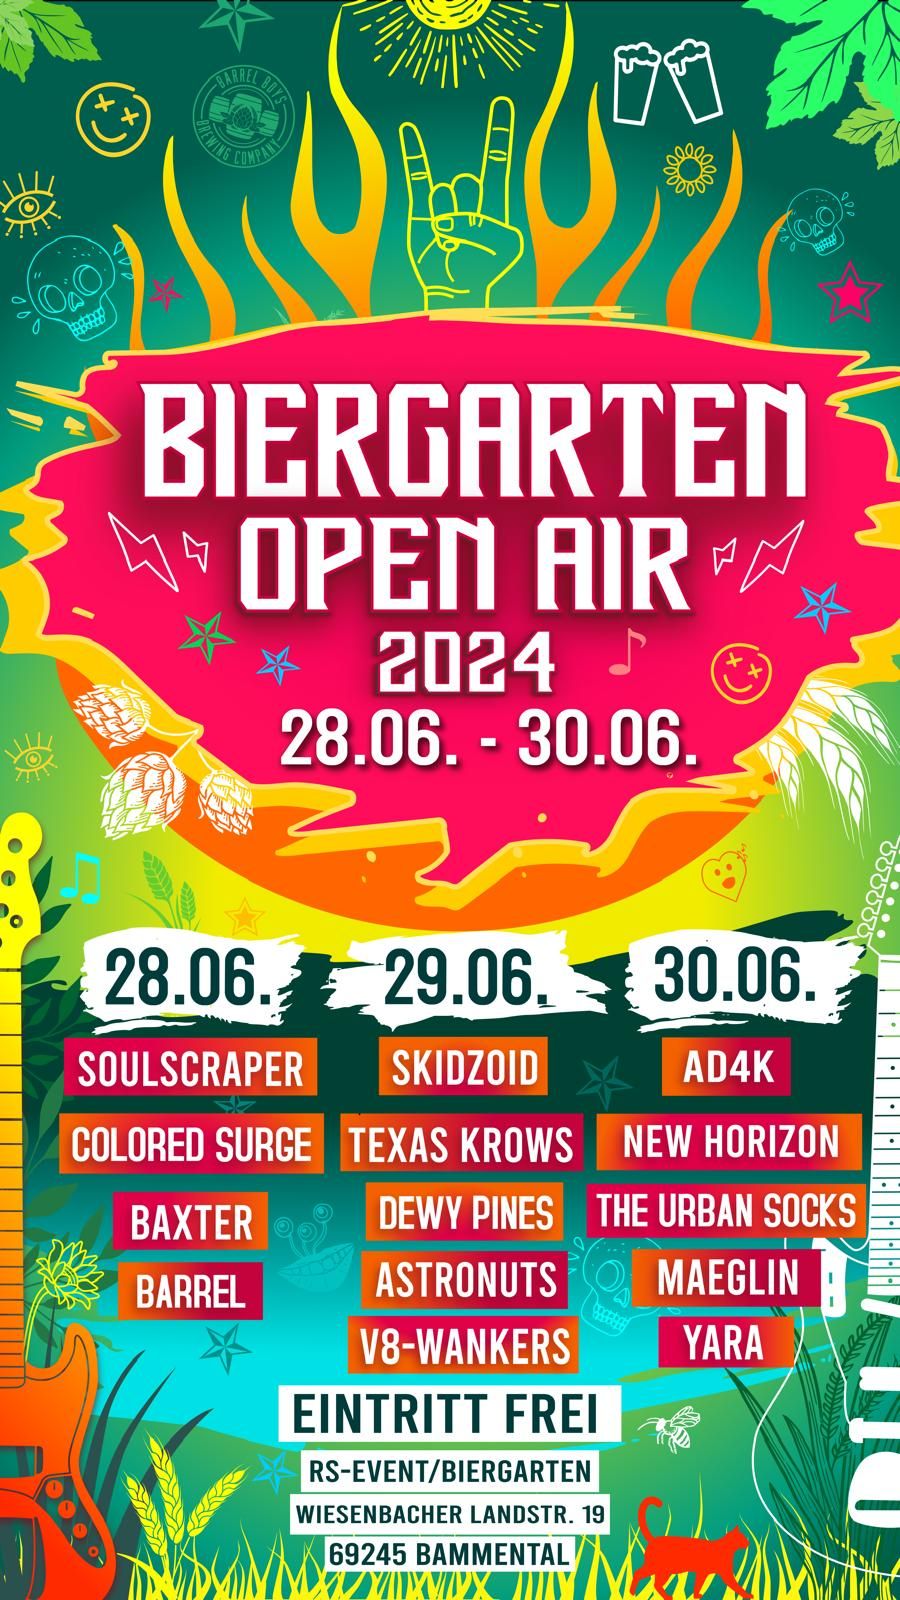 Biergarten Open Air 2024: soulscraper + BARREL + Baxter + ColoredS